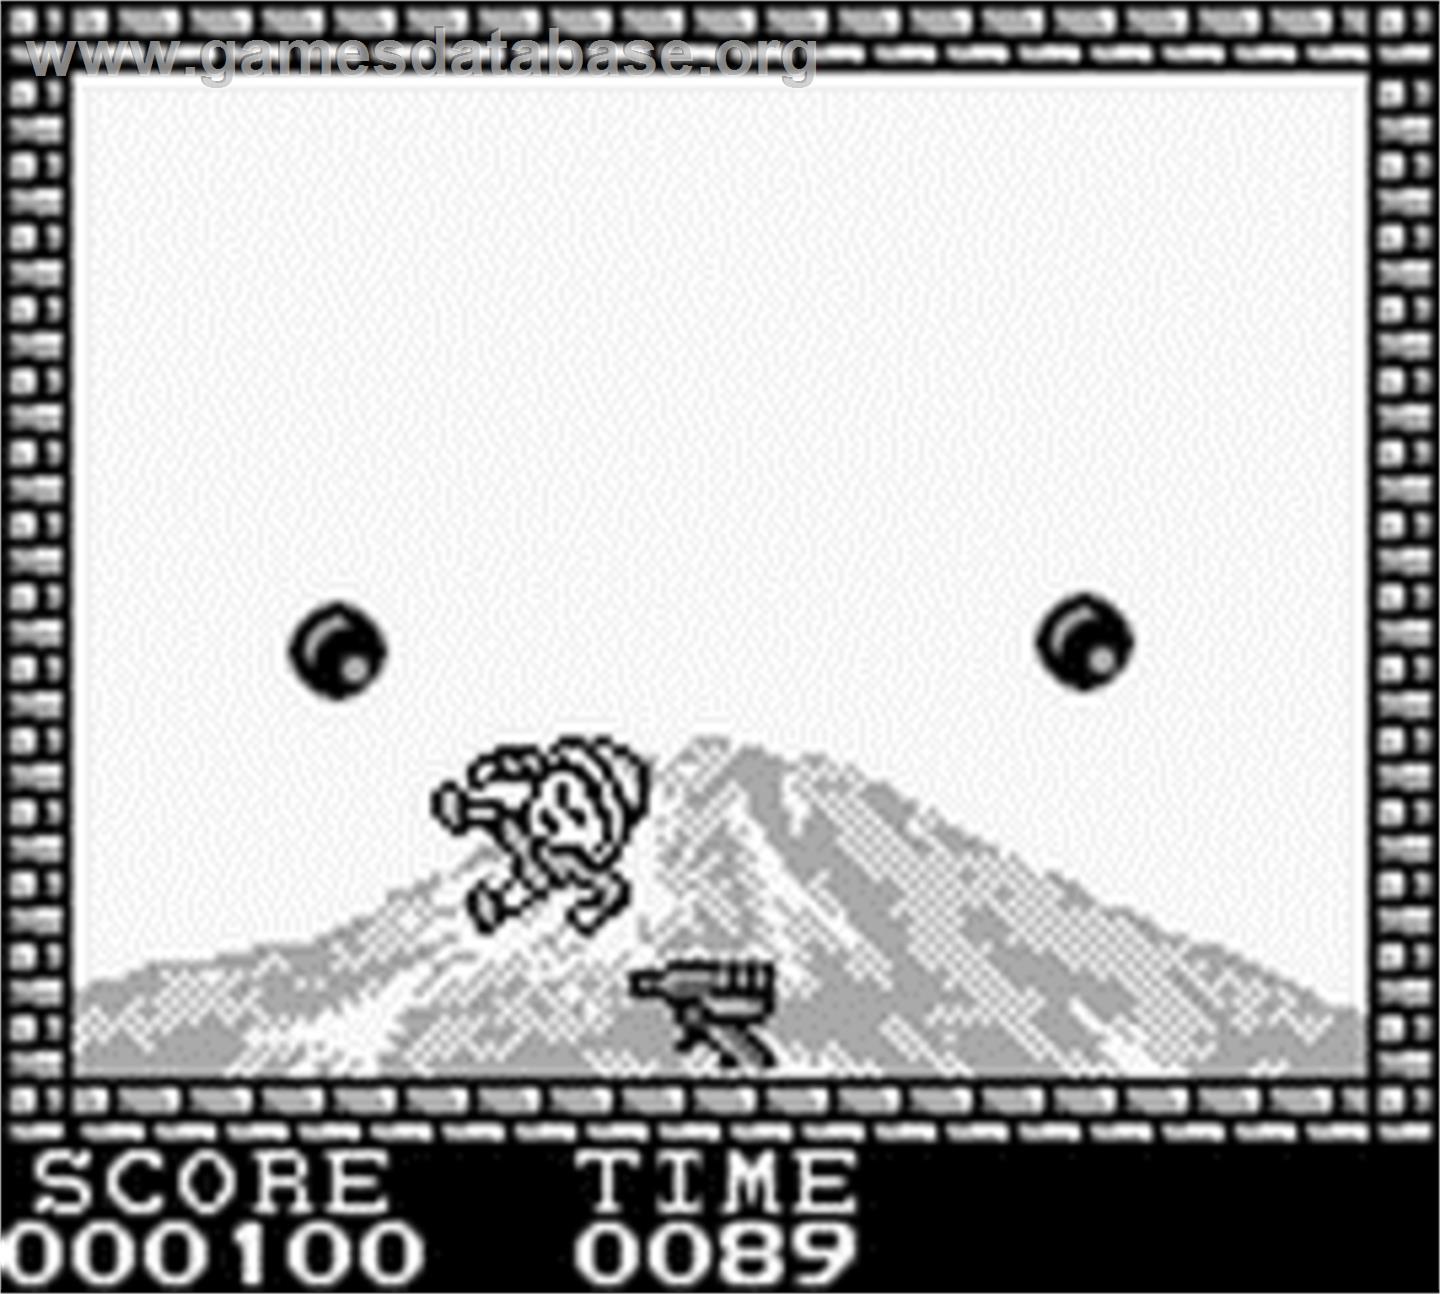 Pang - Nintendo Game Boy - Artwork - In Game